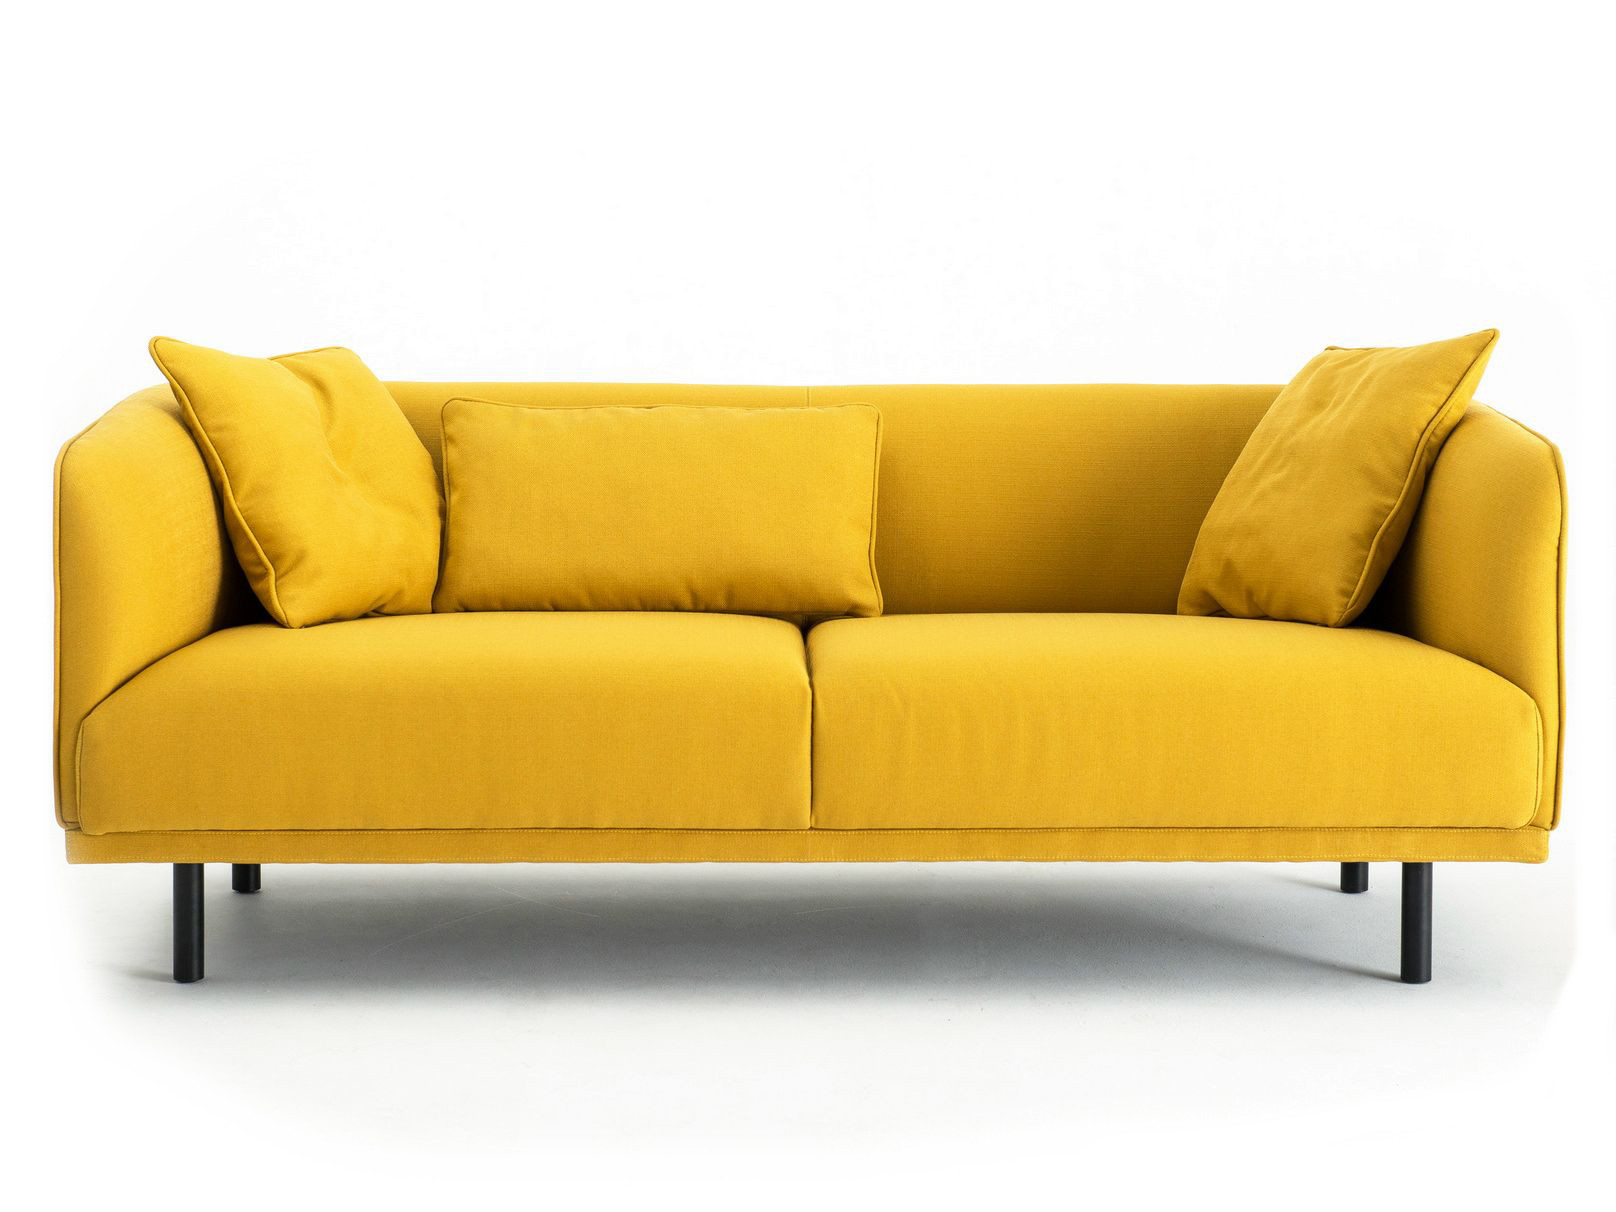 Sofa pictures. Диван Sylvain Sofa. Диван Swell Sofa 3. Желтый диван икеа. Яркий диван.